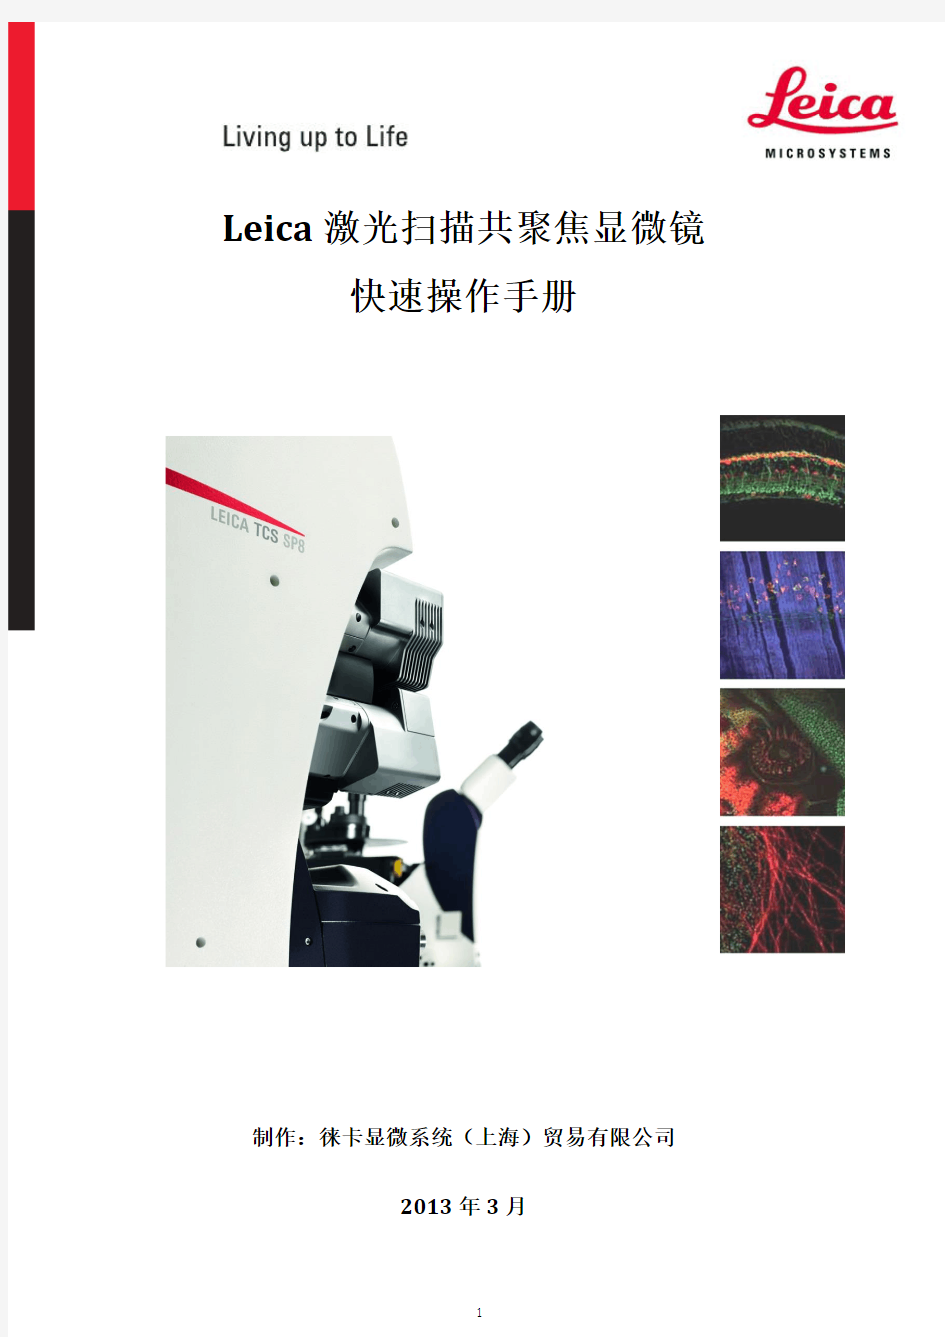 LeicaSP8激光扫描共聚焦显微镜快速操作手册2013-5-13